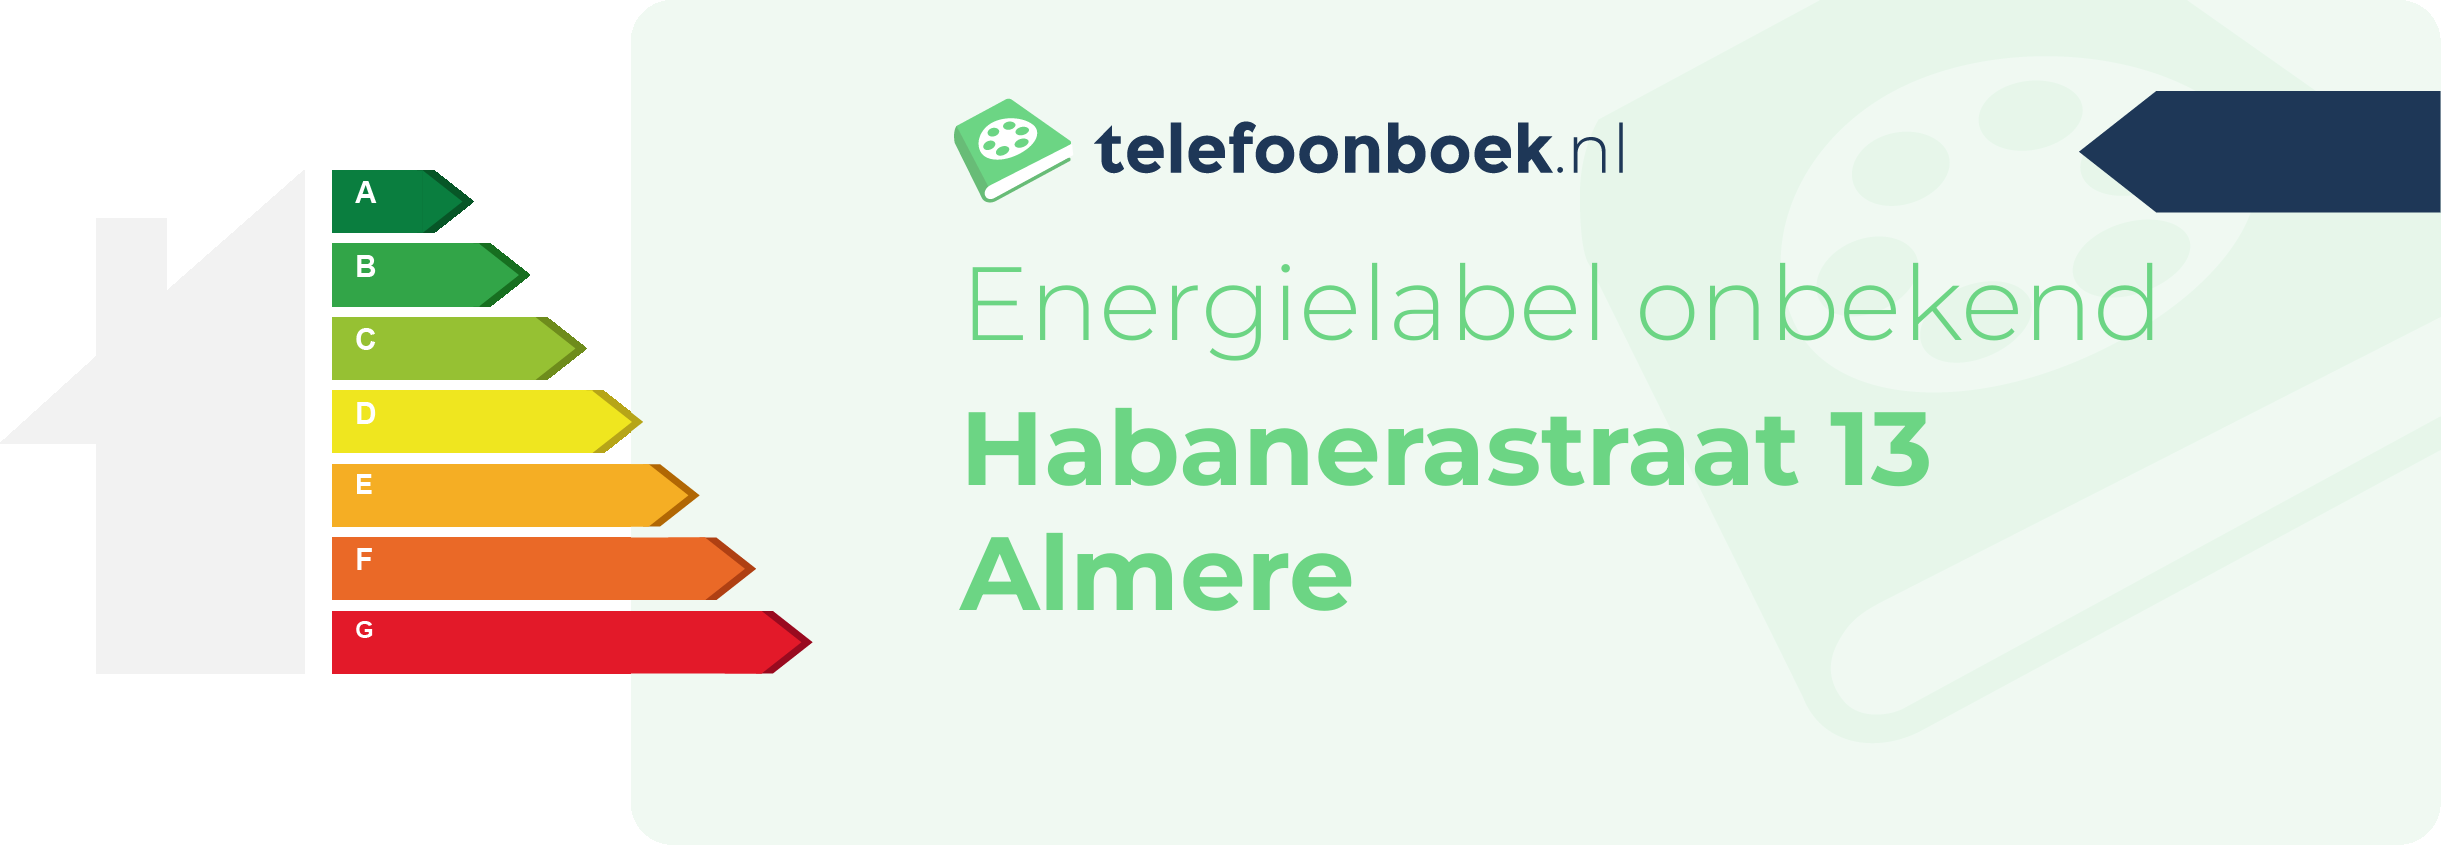 Energielabel Habanerastraat 13 Almere